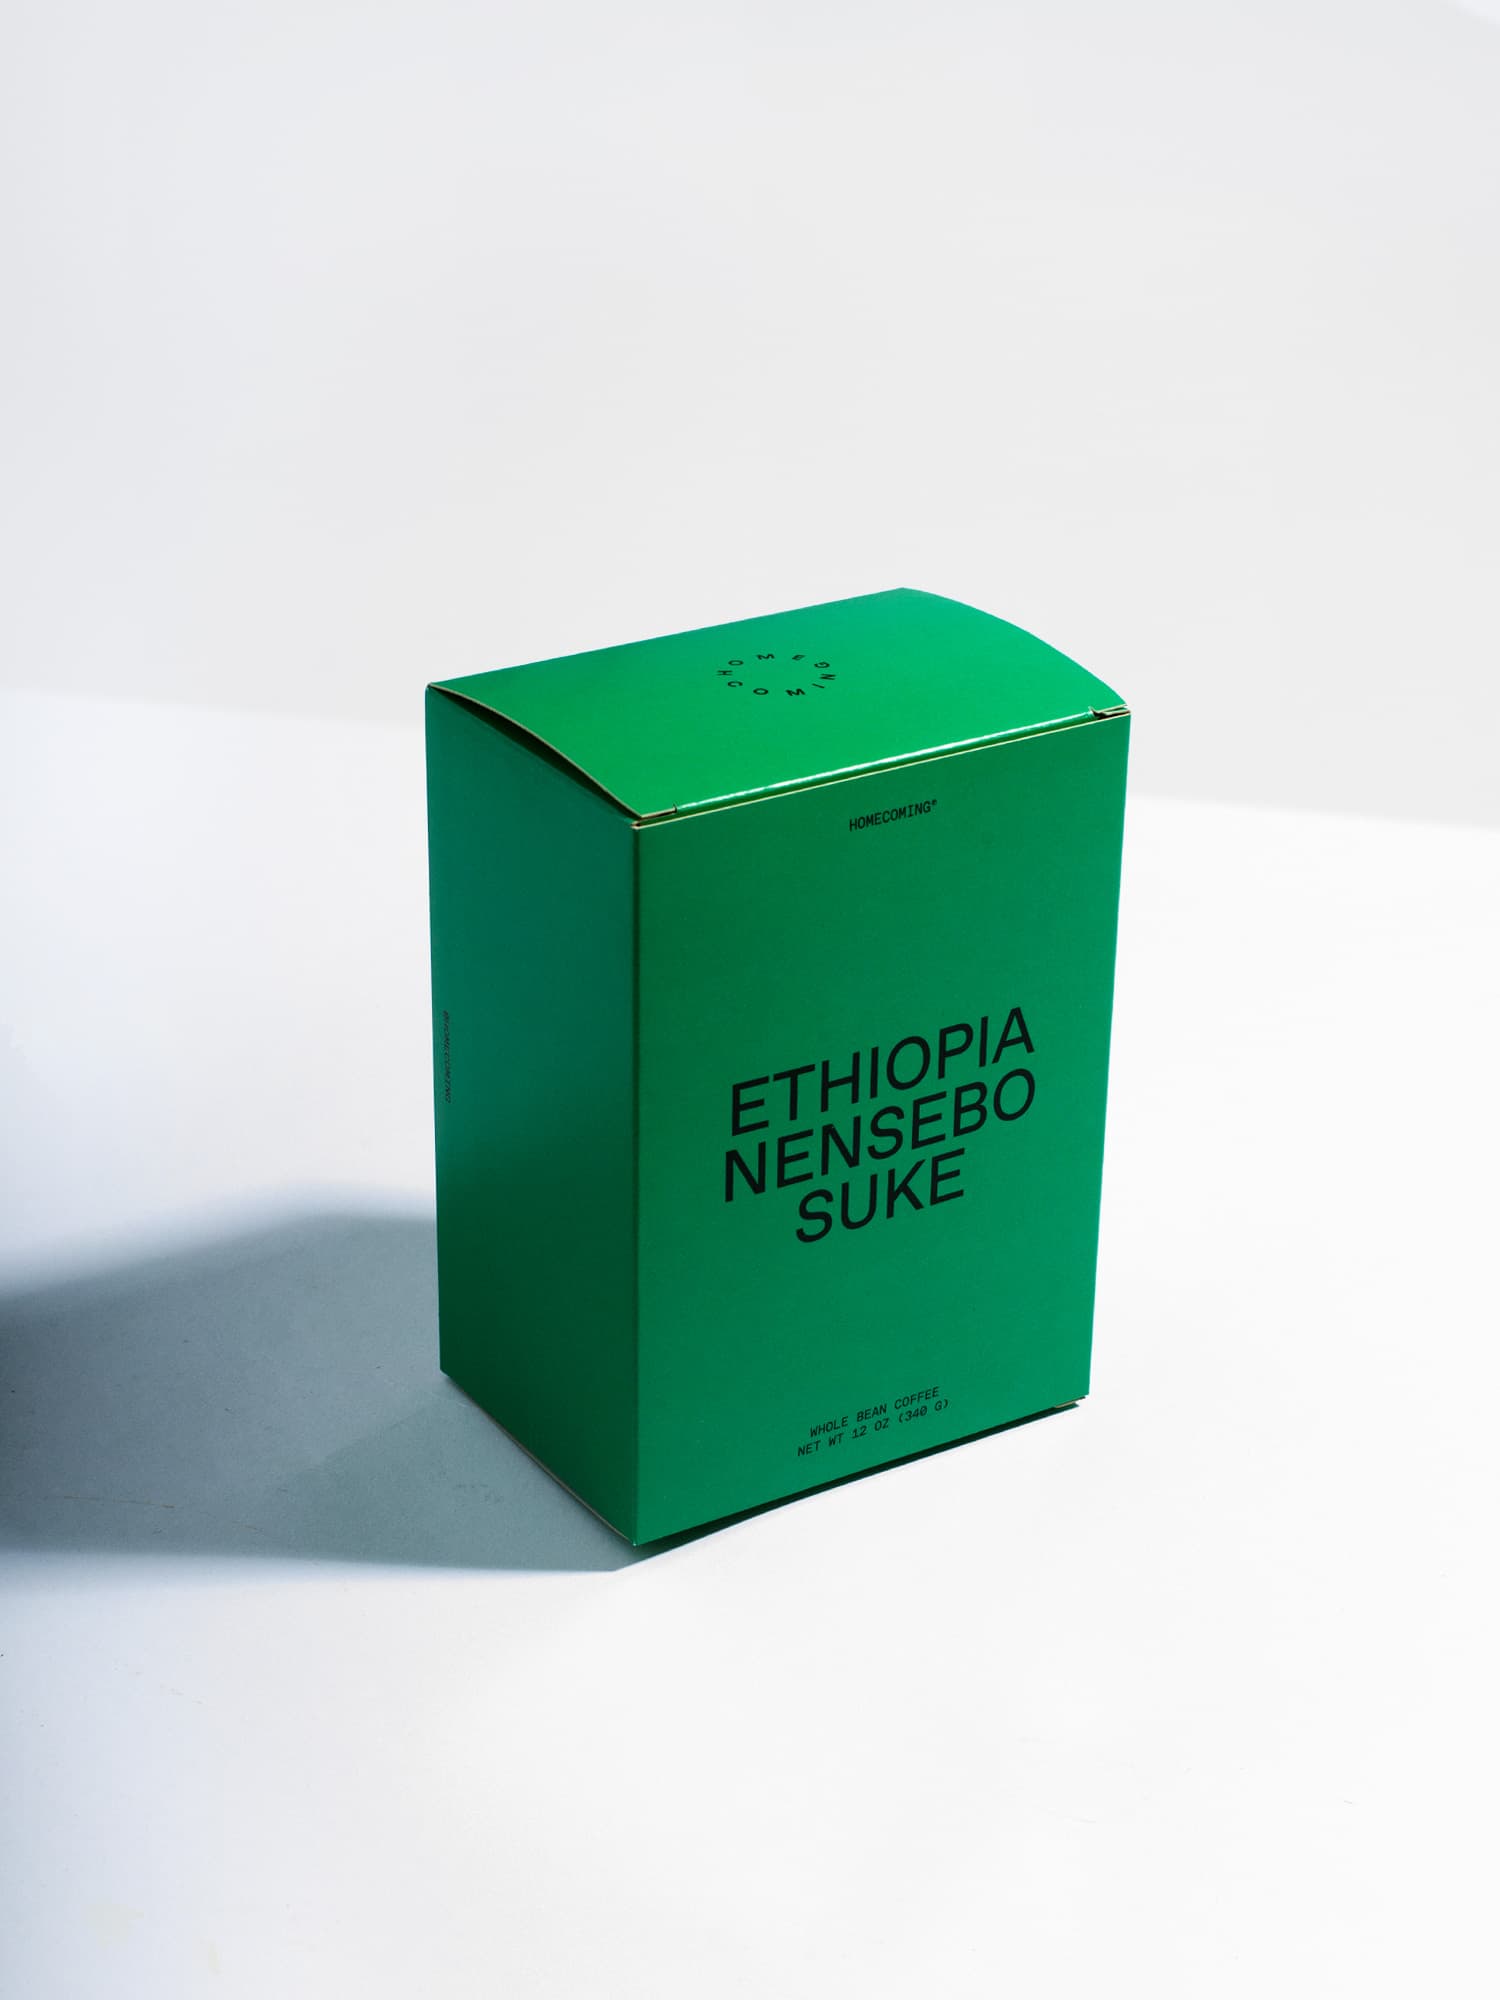 Ethiopia Nensebo